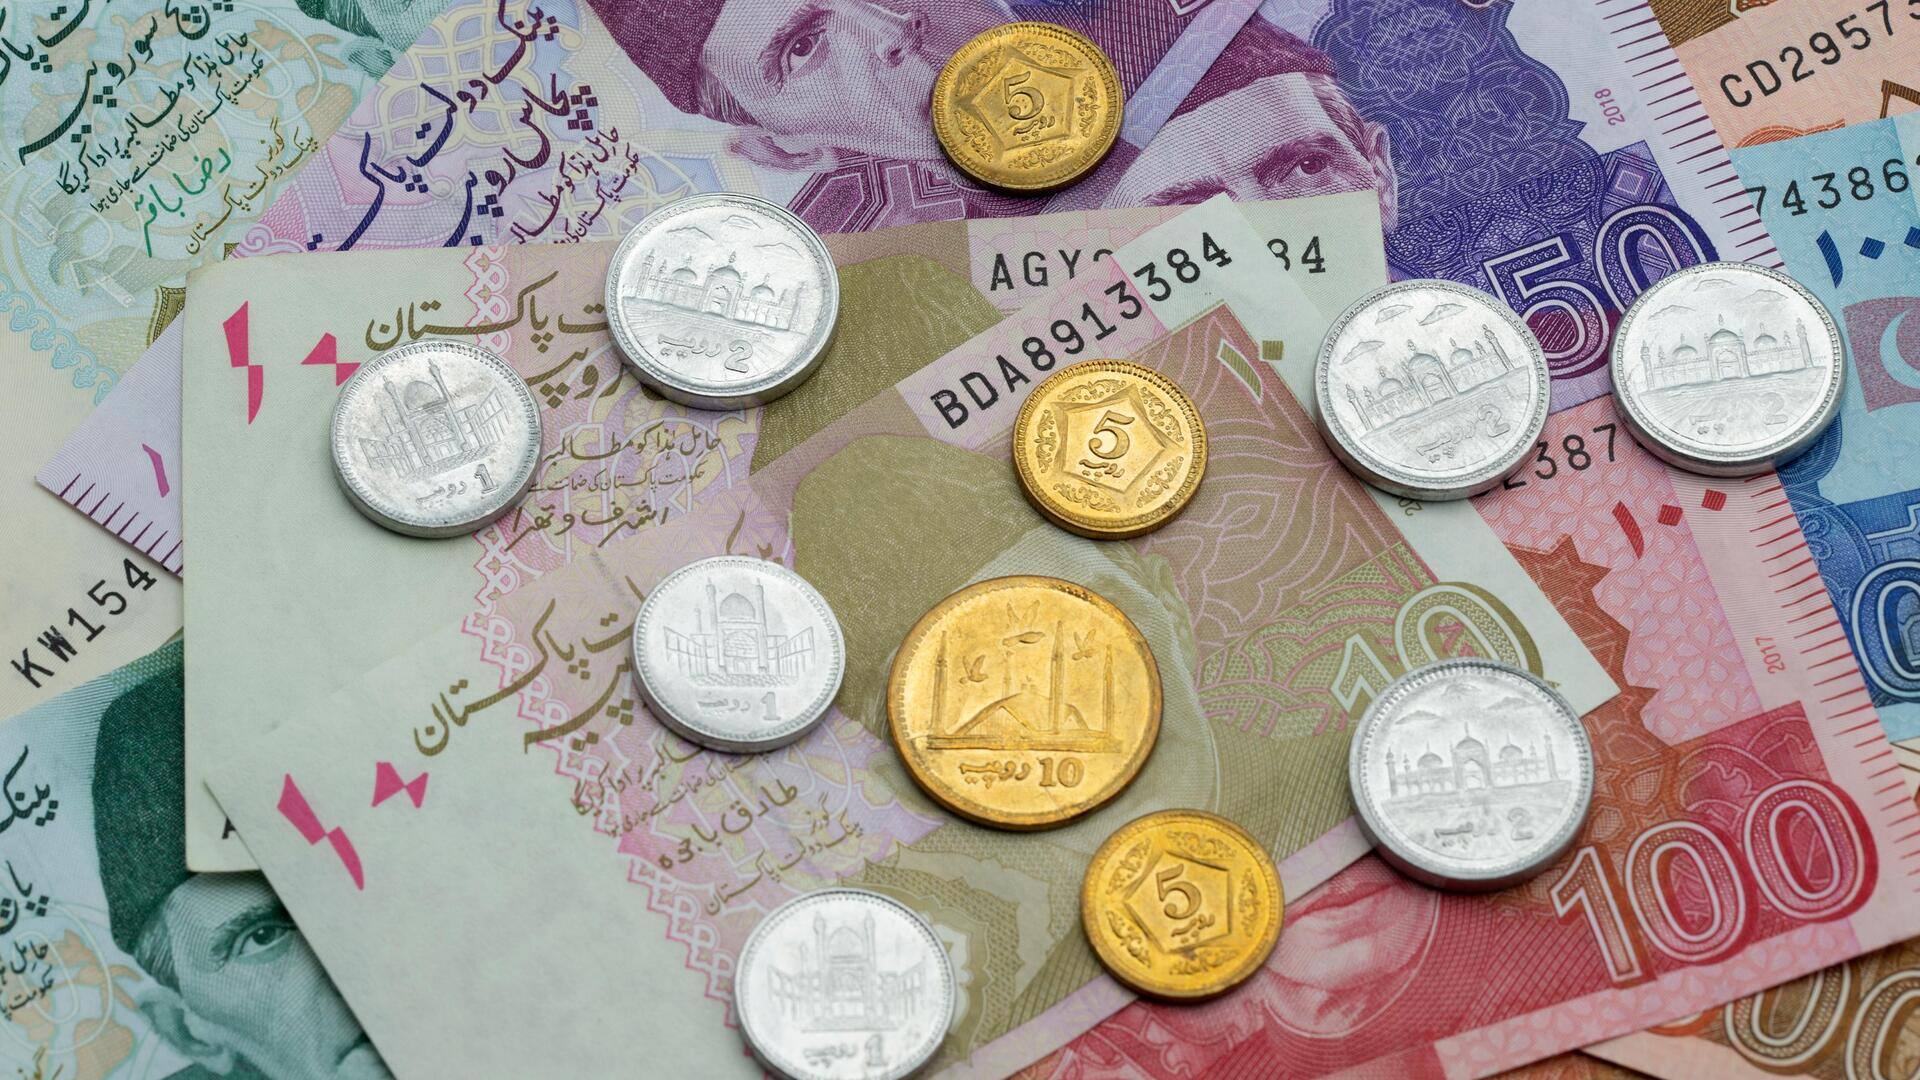 पाकिस्तानी रुपया एशिया की सबसे खराब प्रदर्शन करने वाली मुद्रा, जल्द सुधार की उम्मीद नहीं 